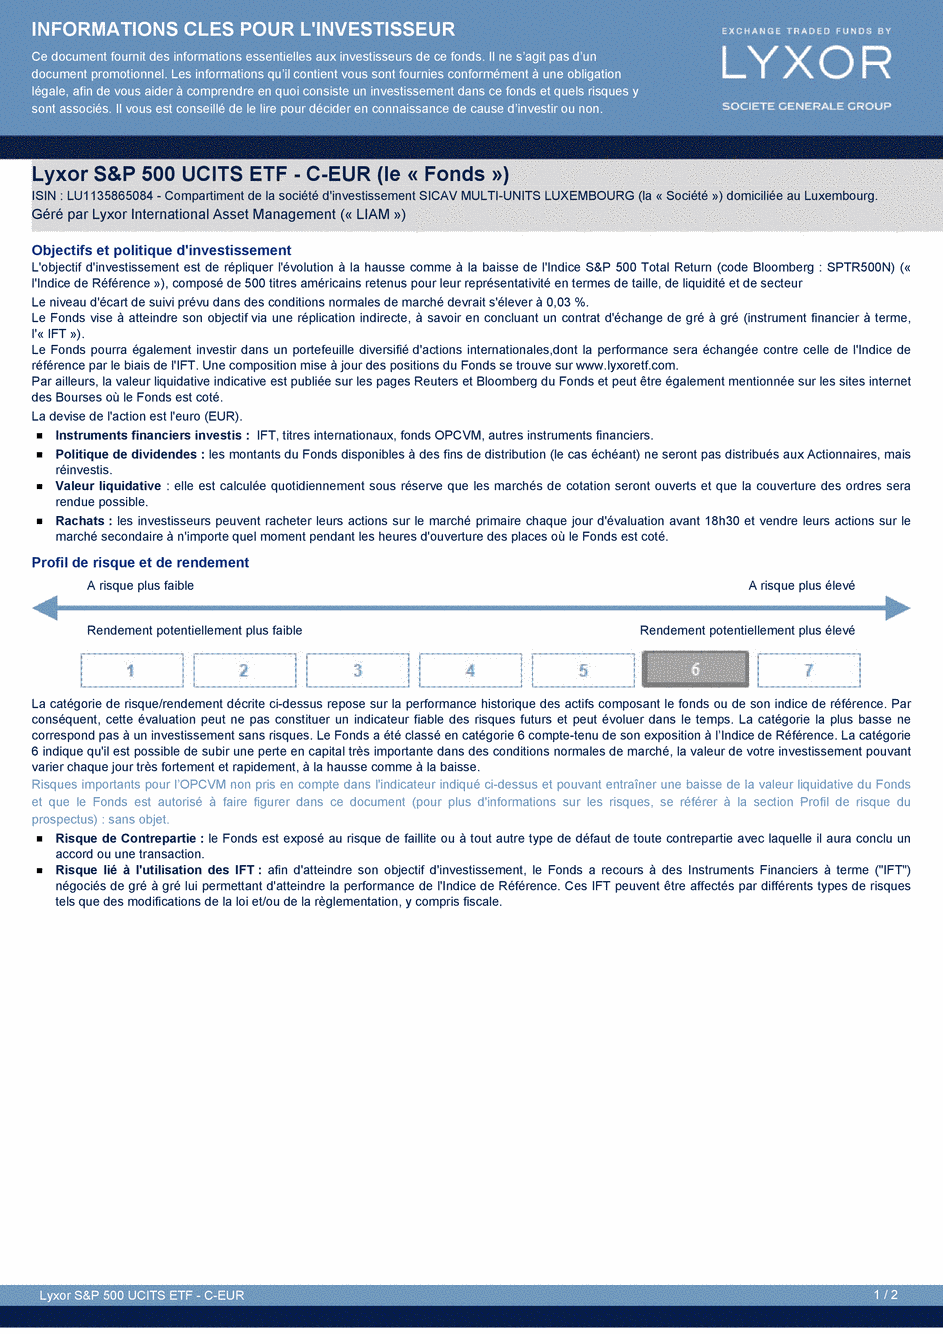 DICI Lyxor S&P 500 UCITS ETF - Acc - 27/04/2015 - Français